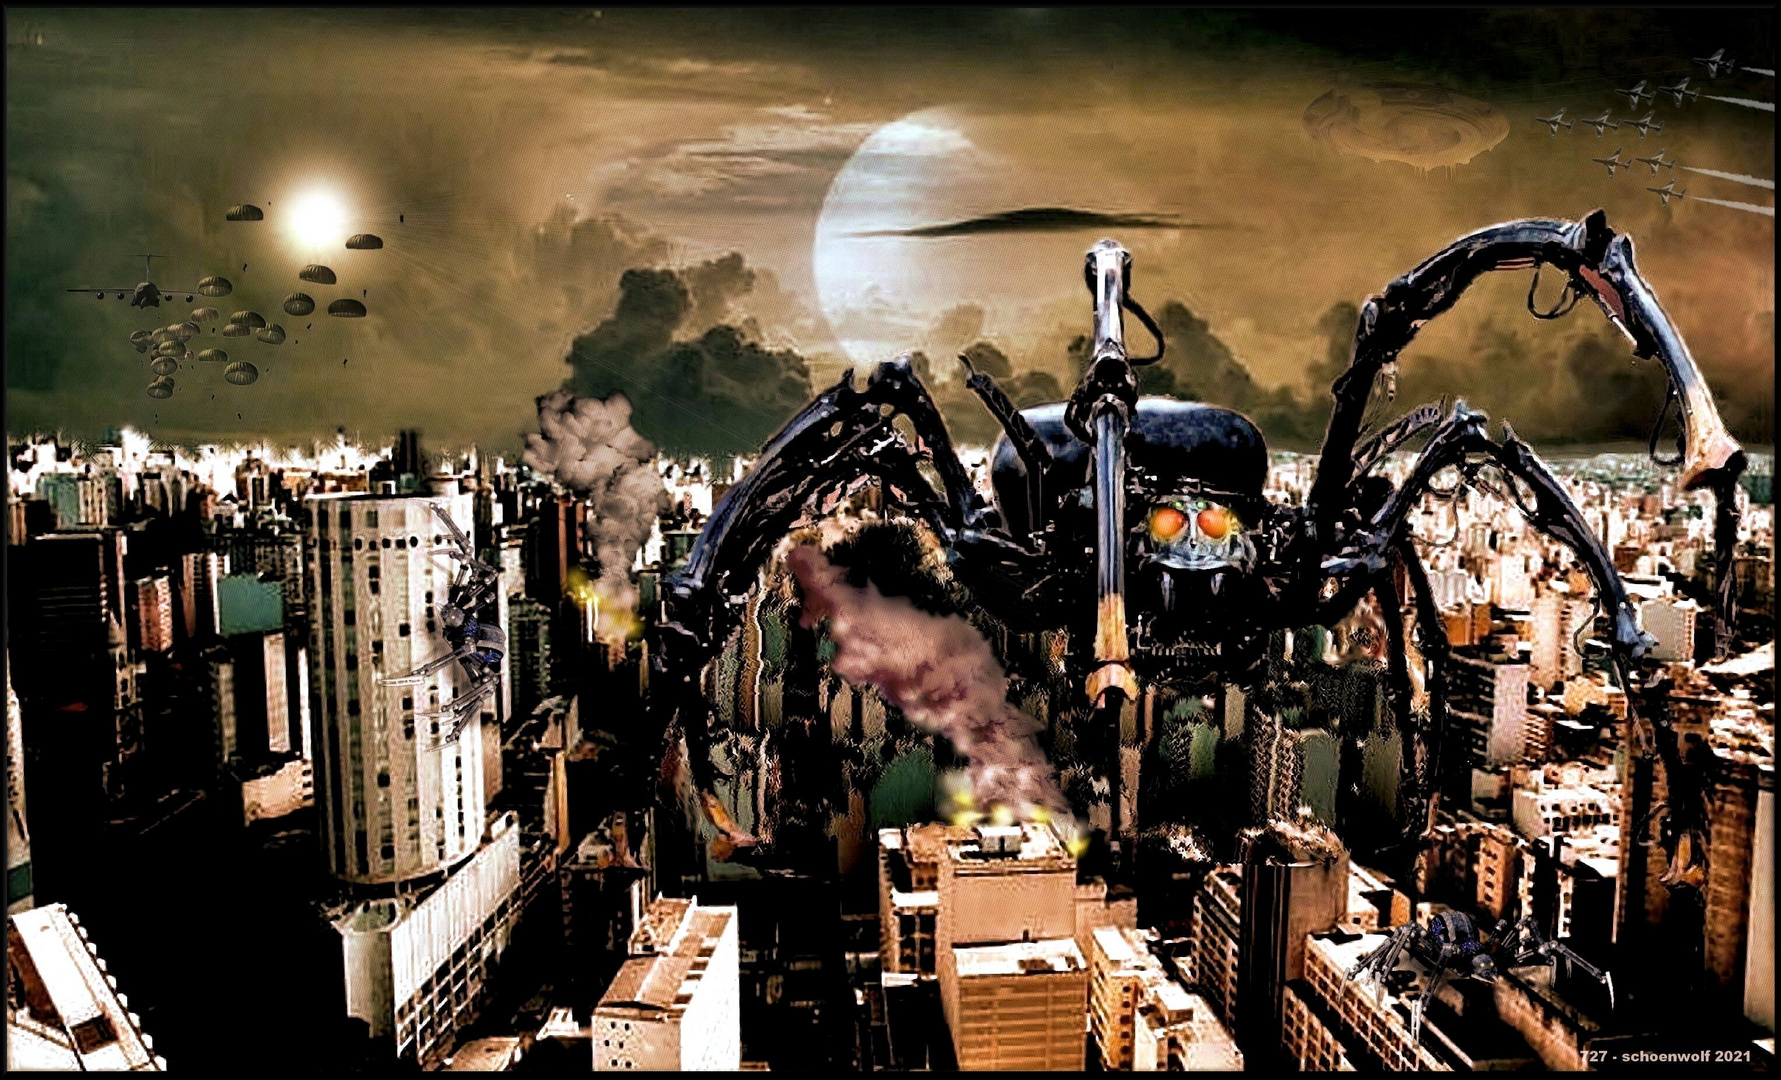 Der Horror - Monstermaschinen zerstören eine Stadt..